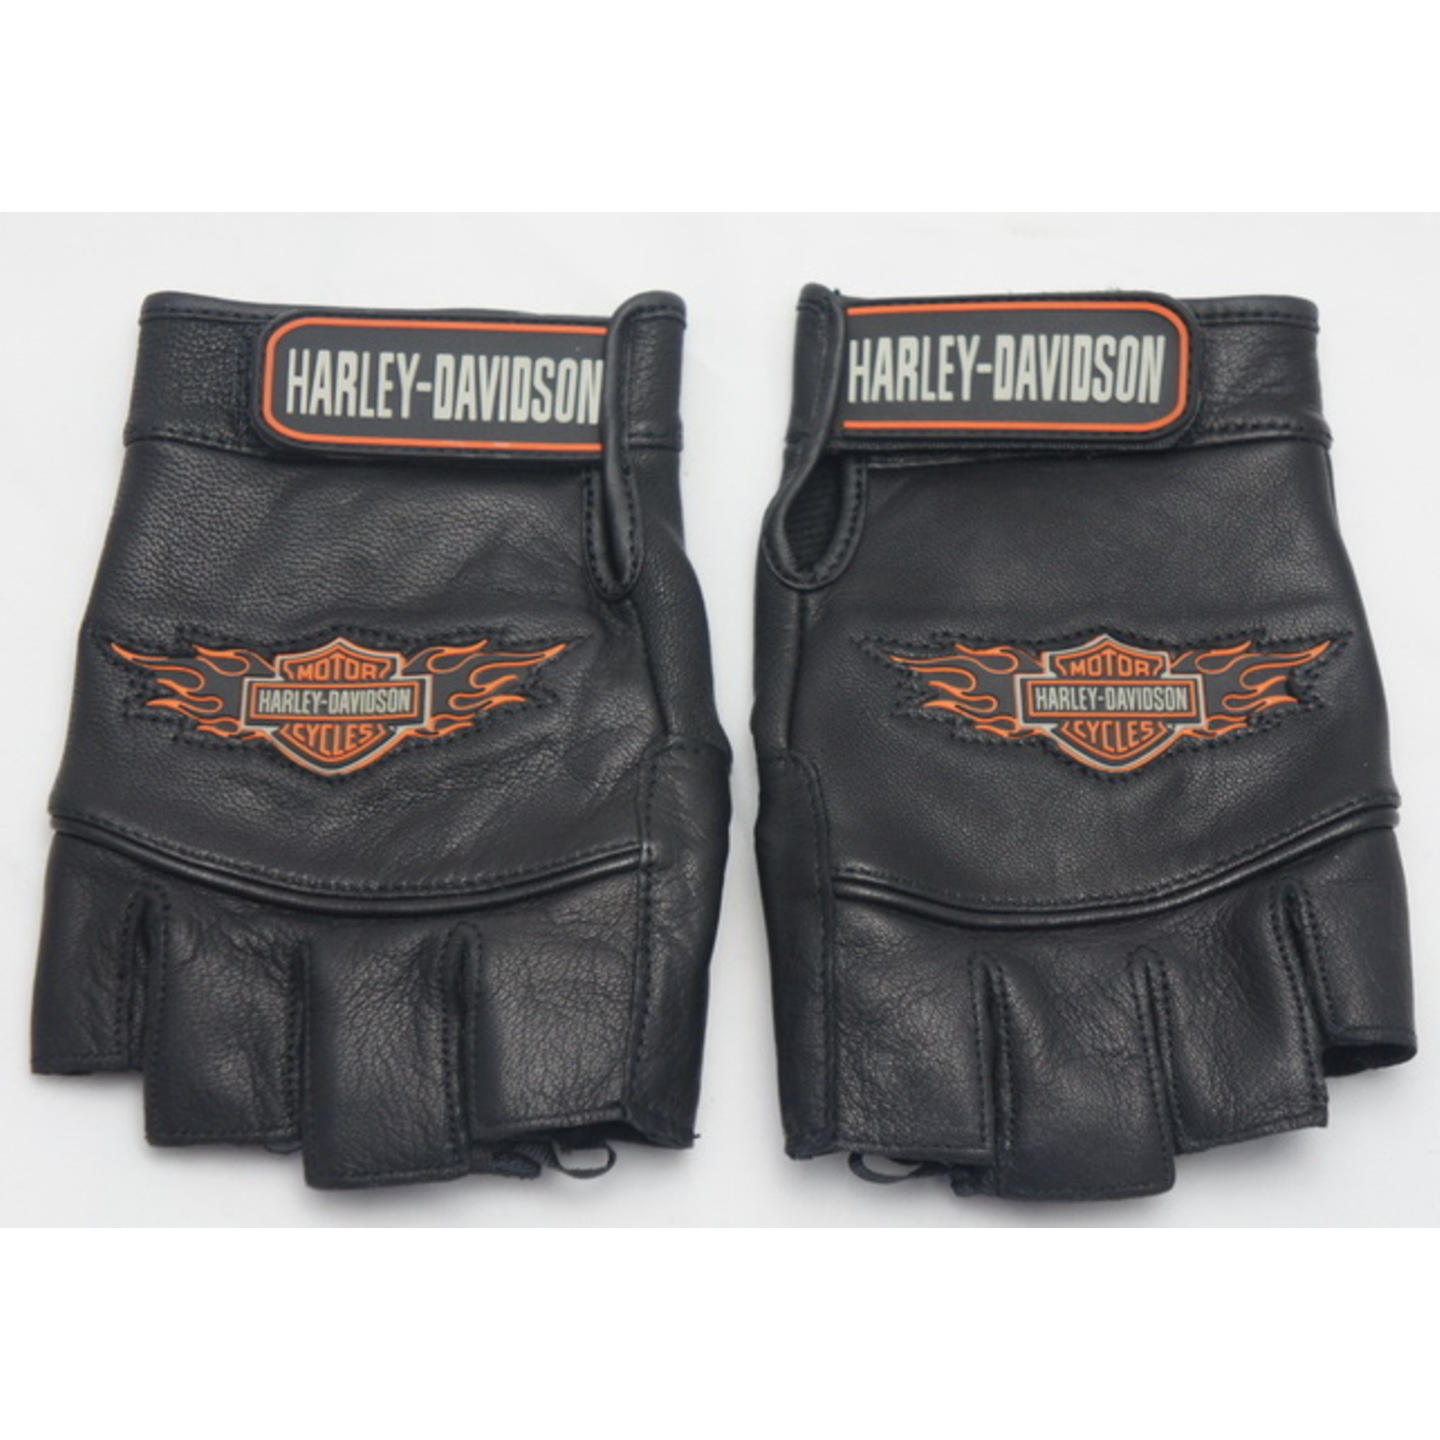 Harley Davidson half finger leather gloves